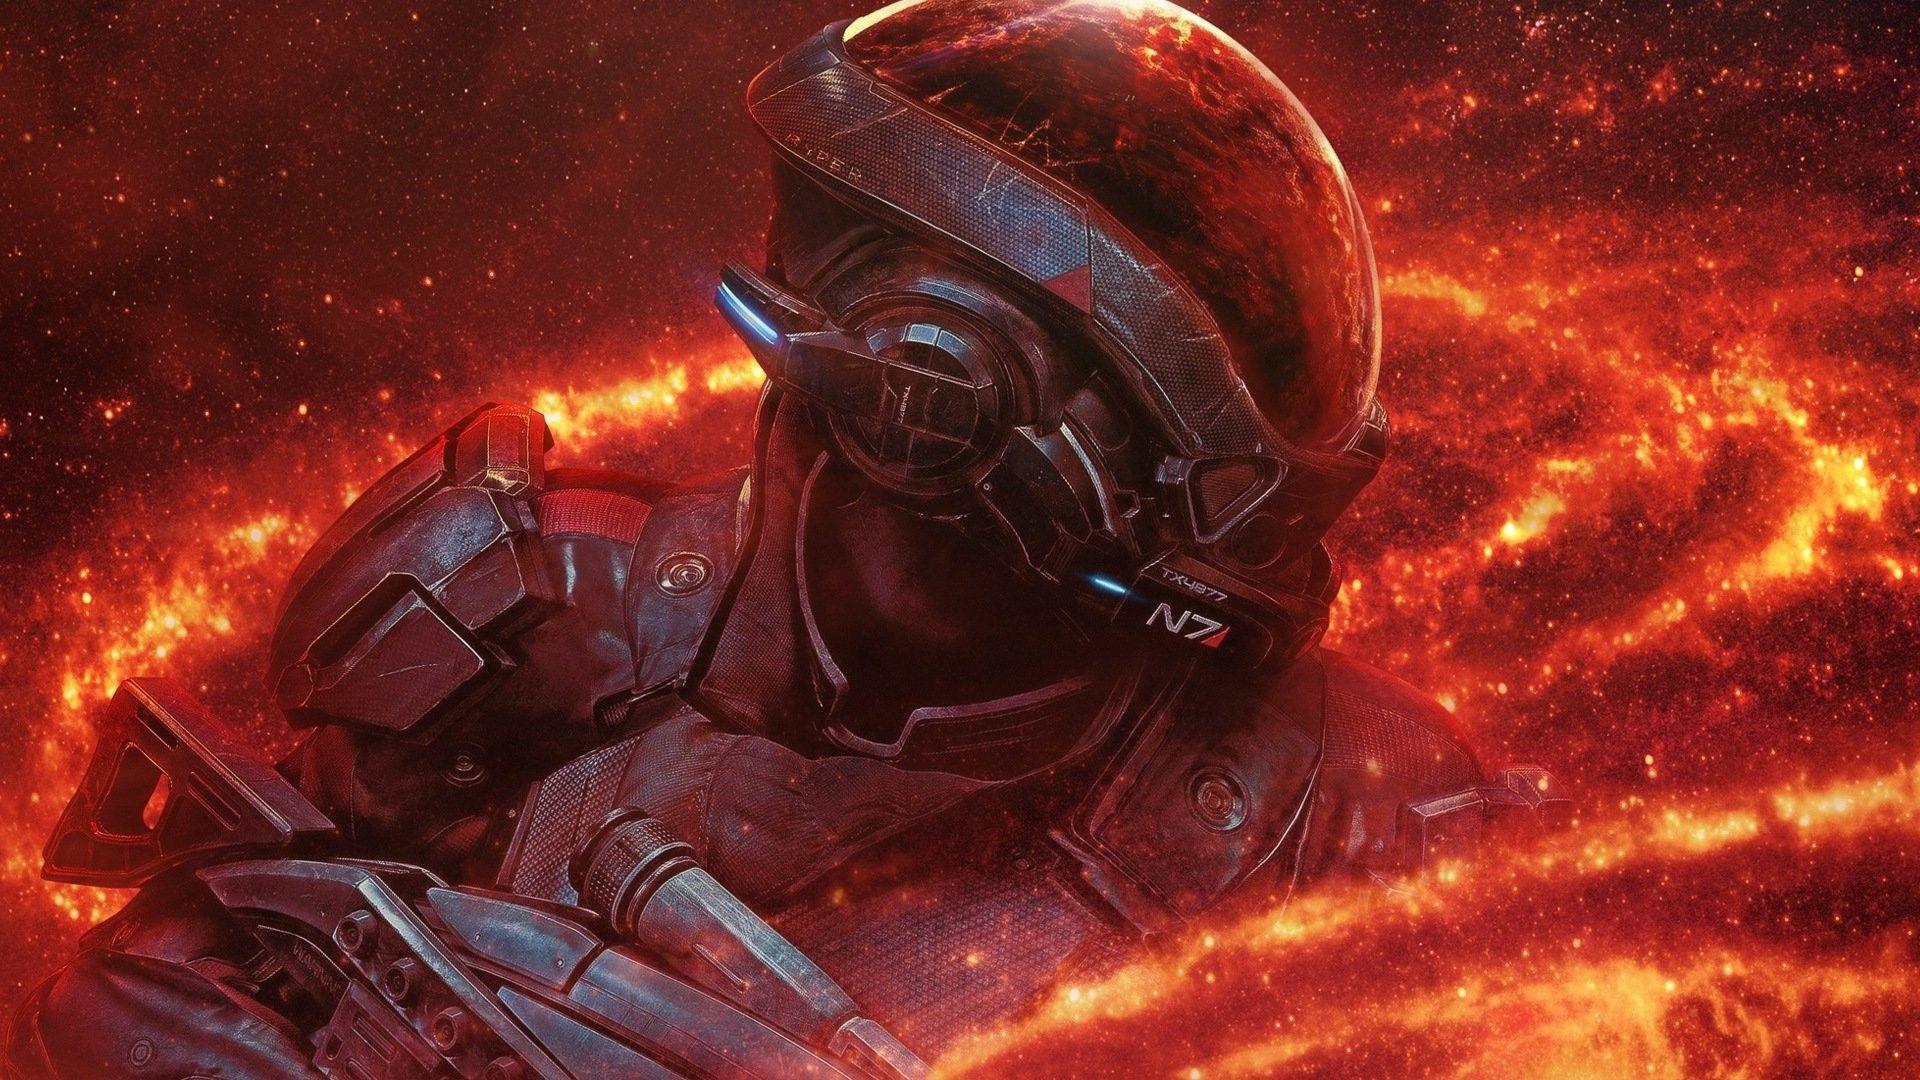 Mass Effect wallpaperDownload free amazing wallpaper of Mass